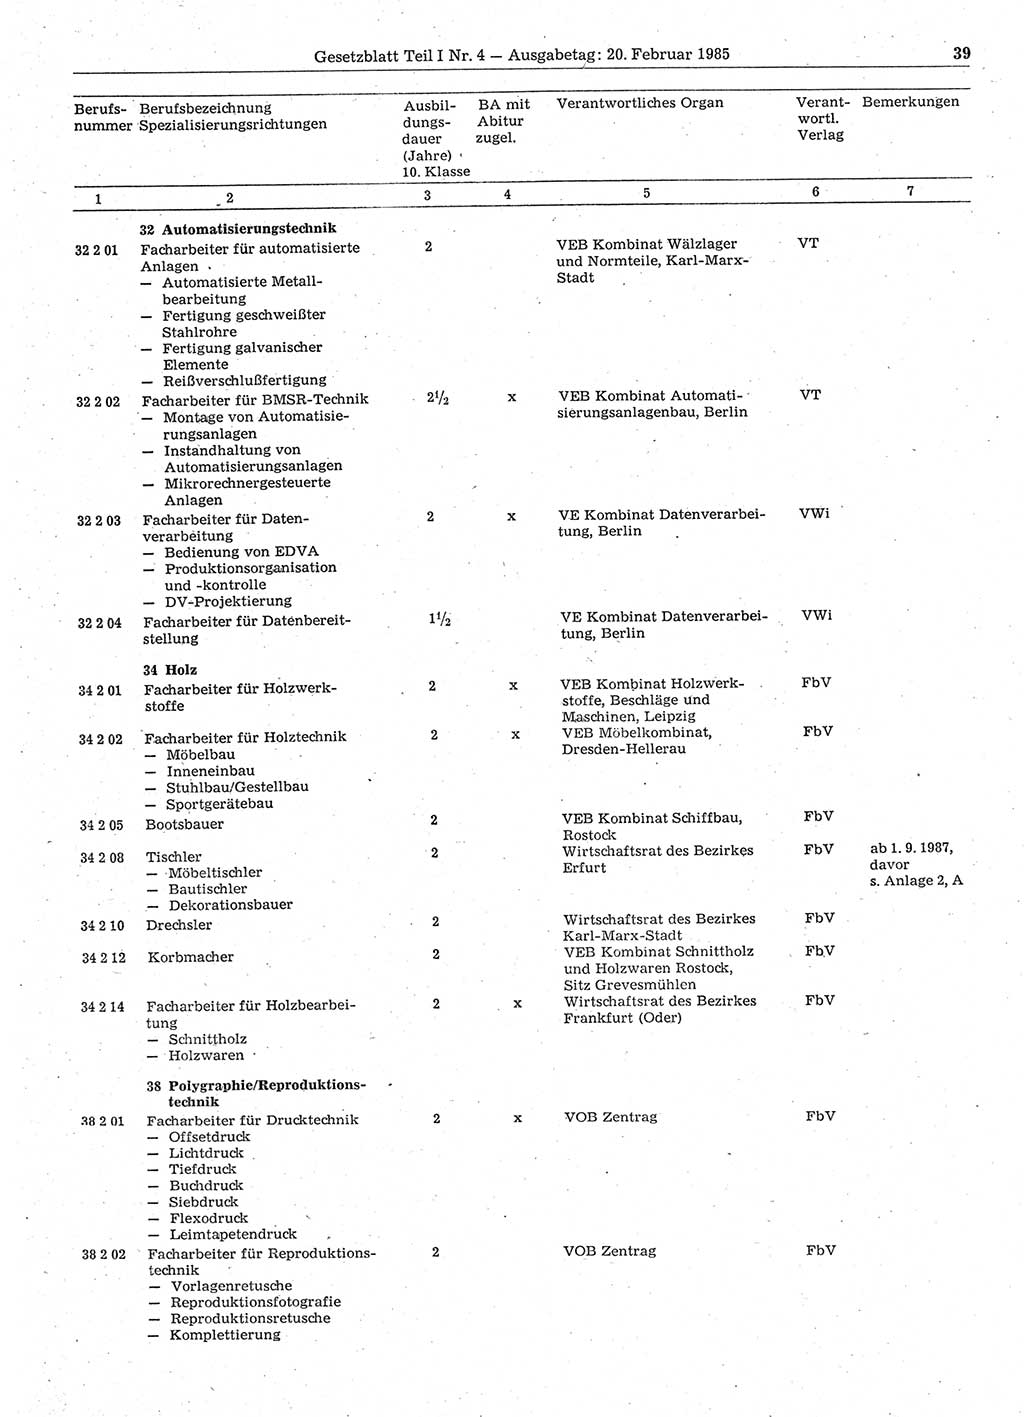 Gesetzblatt (GBl.) der Deutschen Demokratischen Republik (DDR) Teil Ⅰ 1985, Seite 39 (GBl. DDR Ⅰ 1985, S. 39)